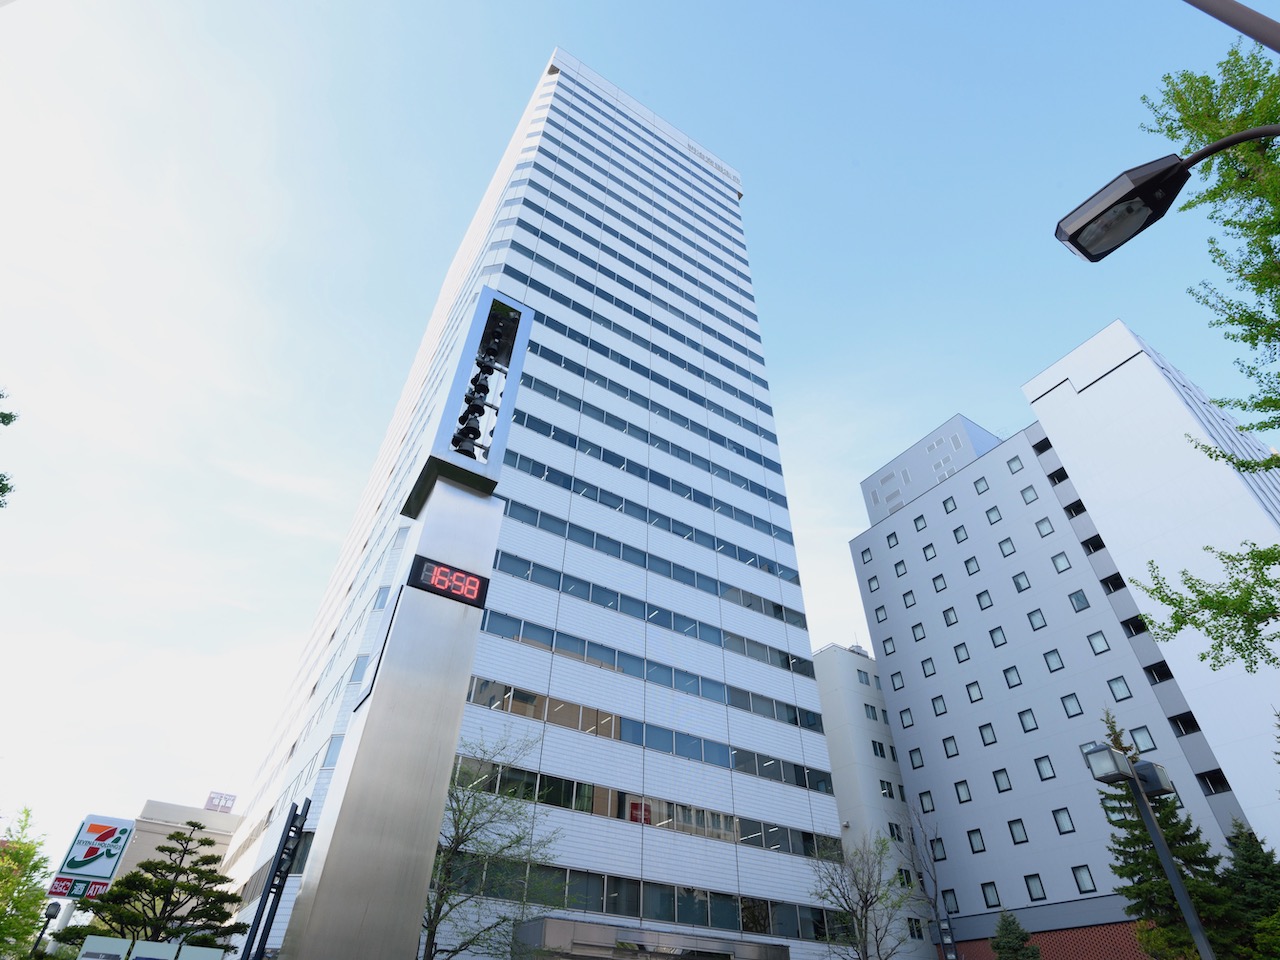 JR『札幌駅』から徒歩約5分と、通勤等にも便利なロケーションにオフィスを構える。